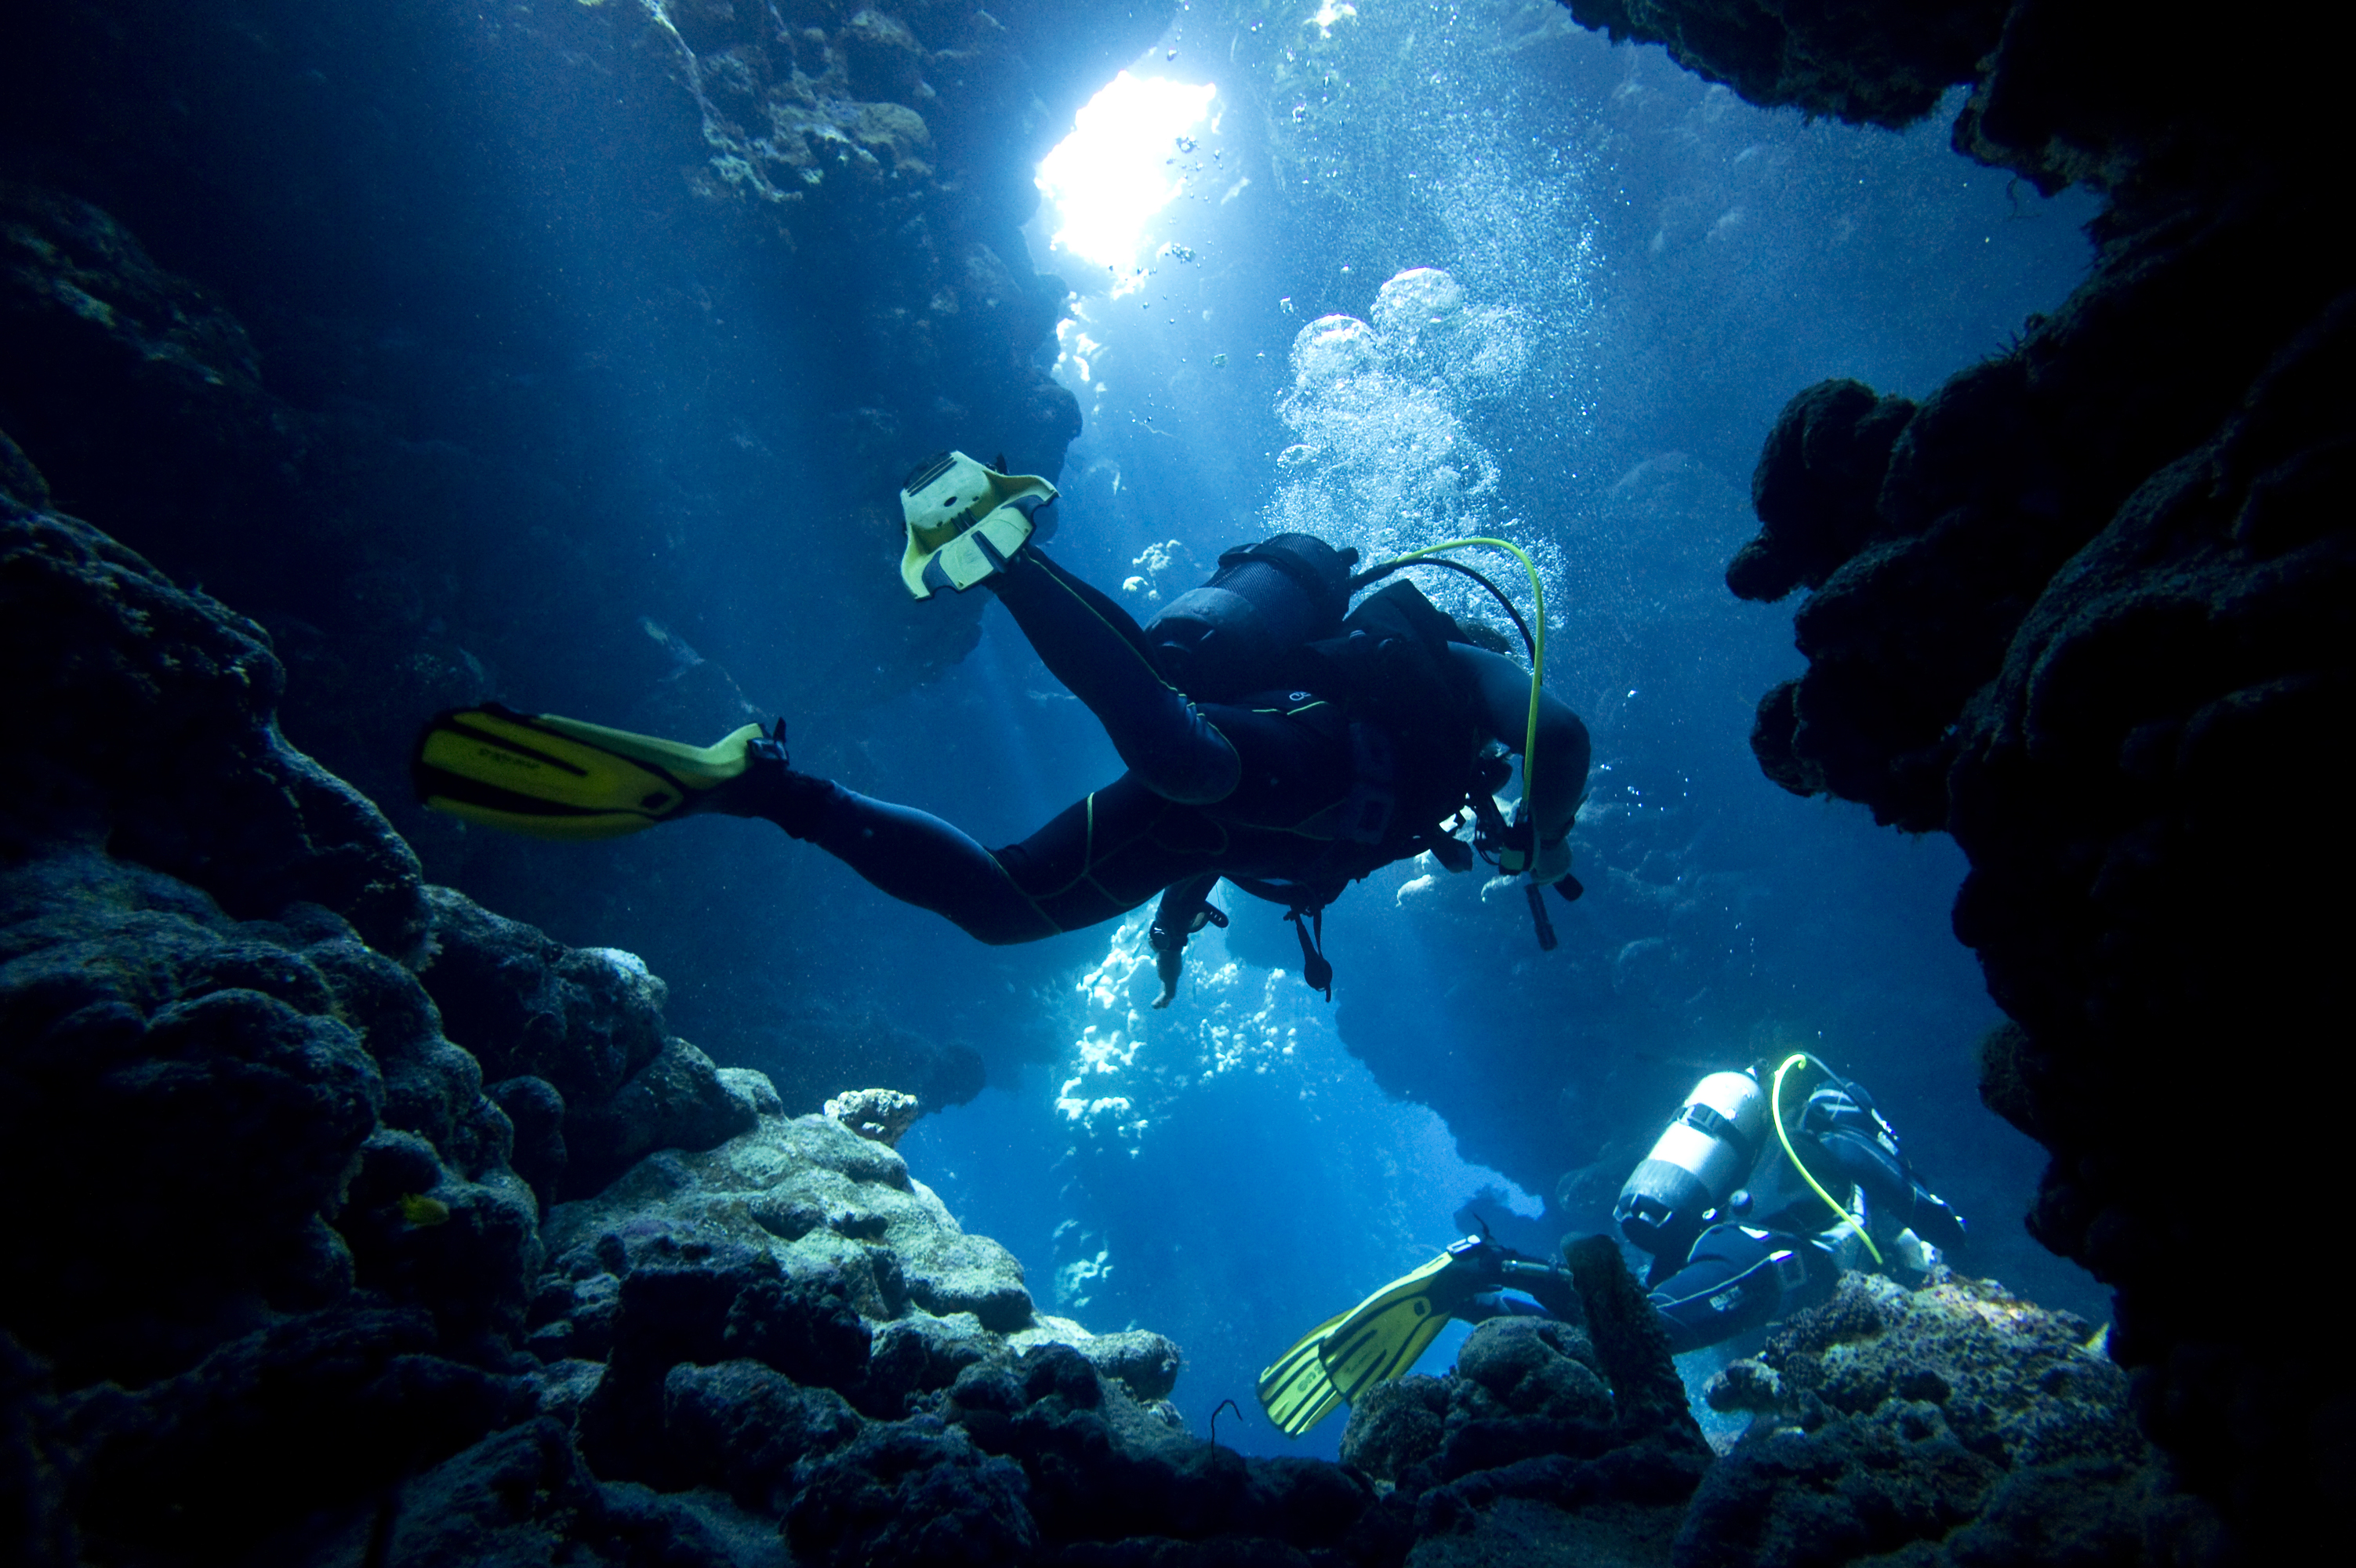 Coral Scuba Diver Underwater 3005x2000